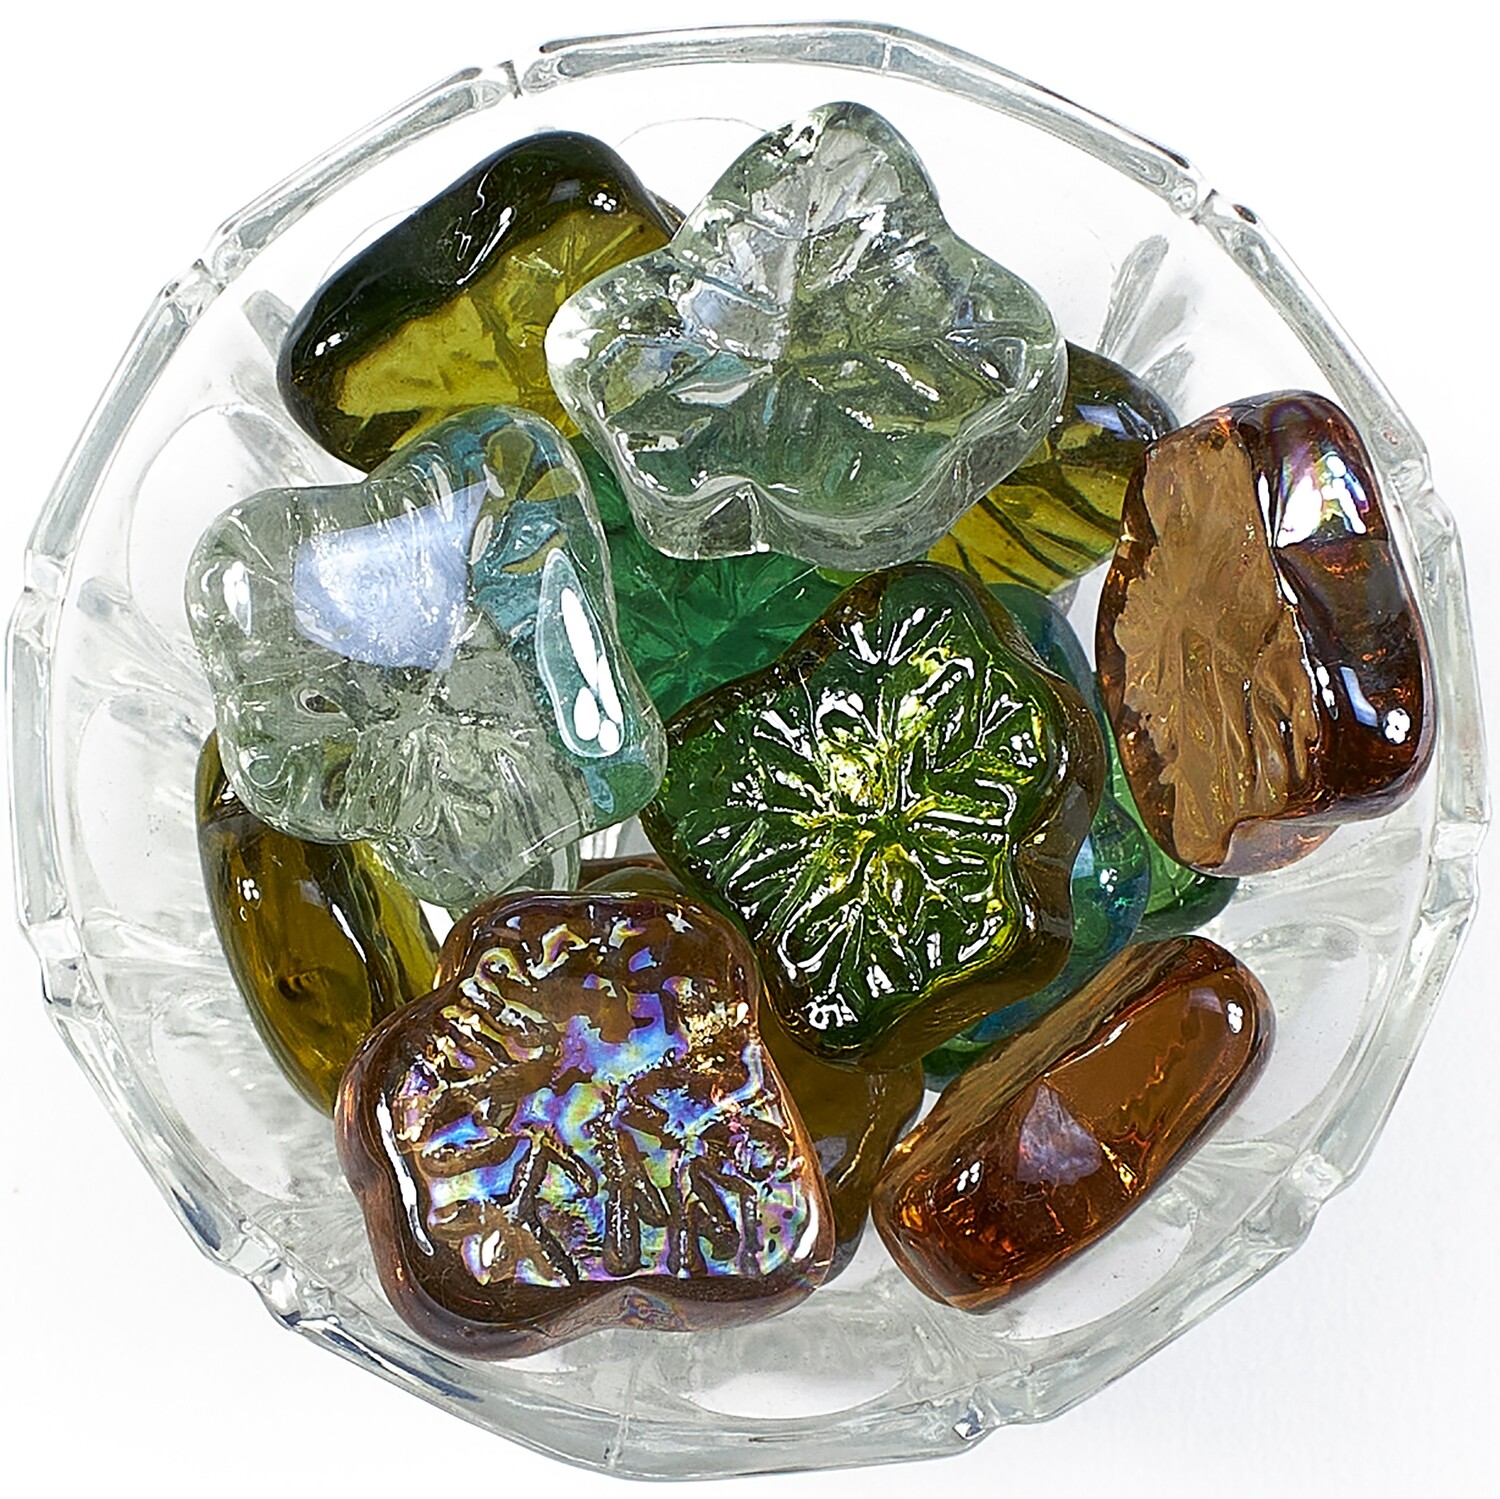 Камни KUN LONG декоративные, стеклянные, в виде листьев, для аквариума (в мешке 5кг)